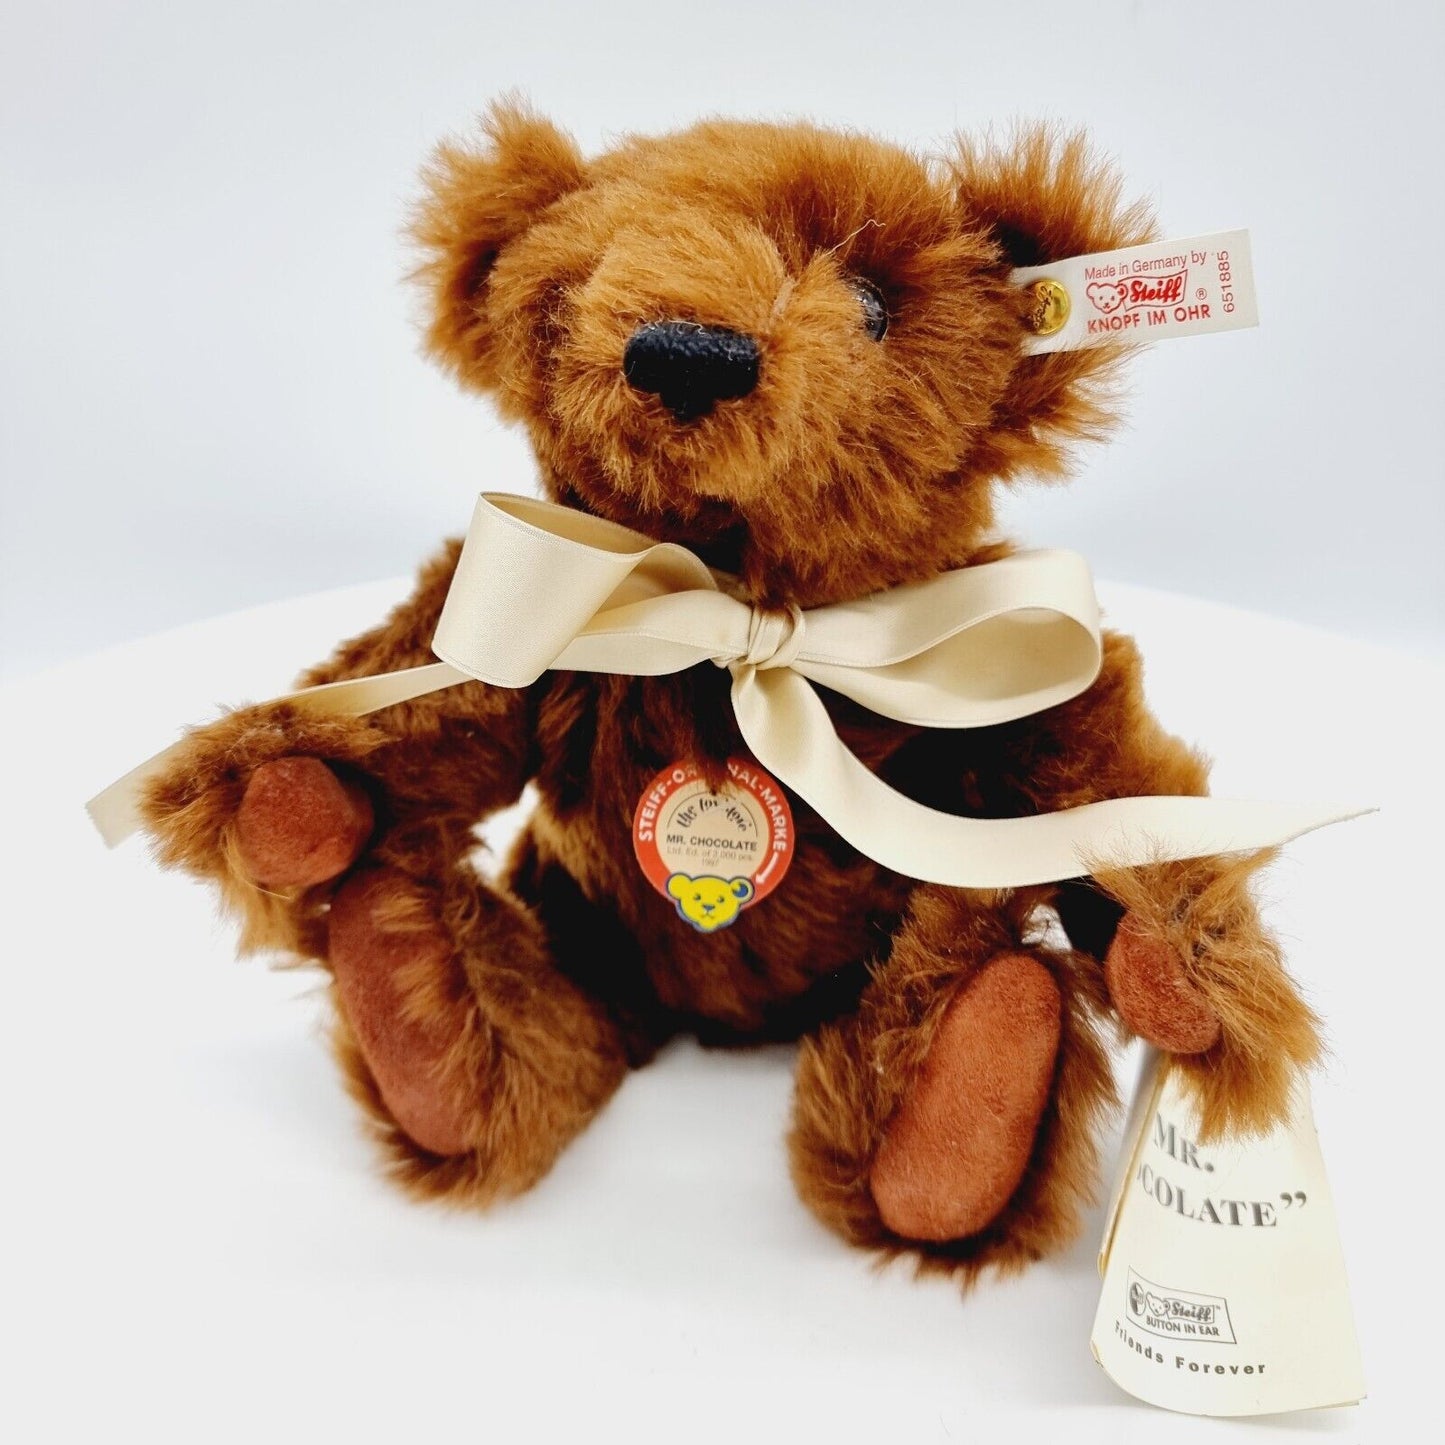 Steiff 651885 Teddybär Mr. Chocolate limitiert 2000 aus 1997 für The Toy Store